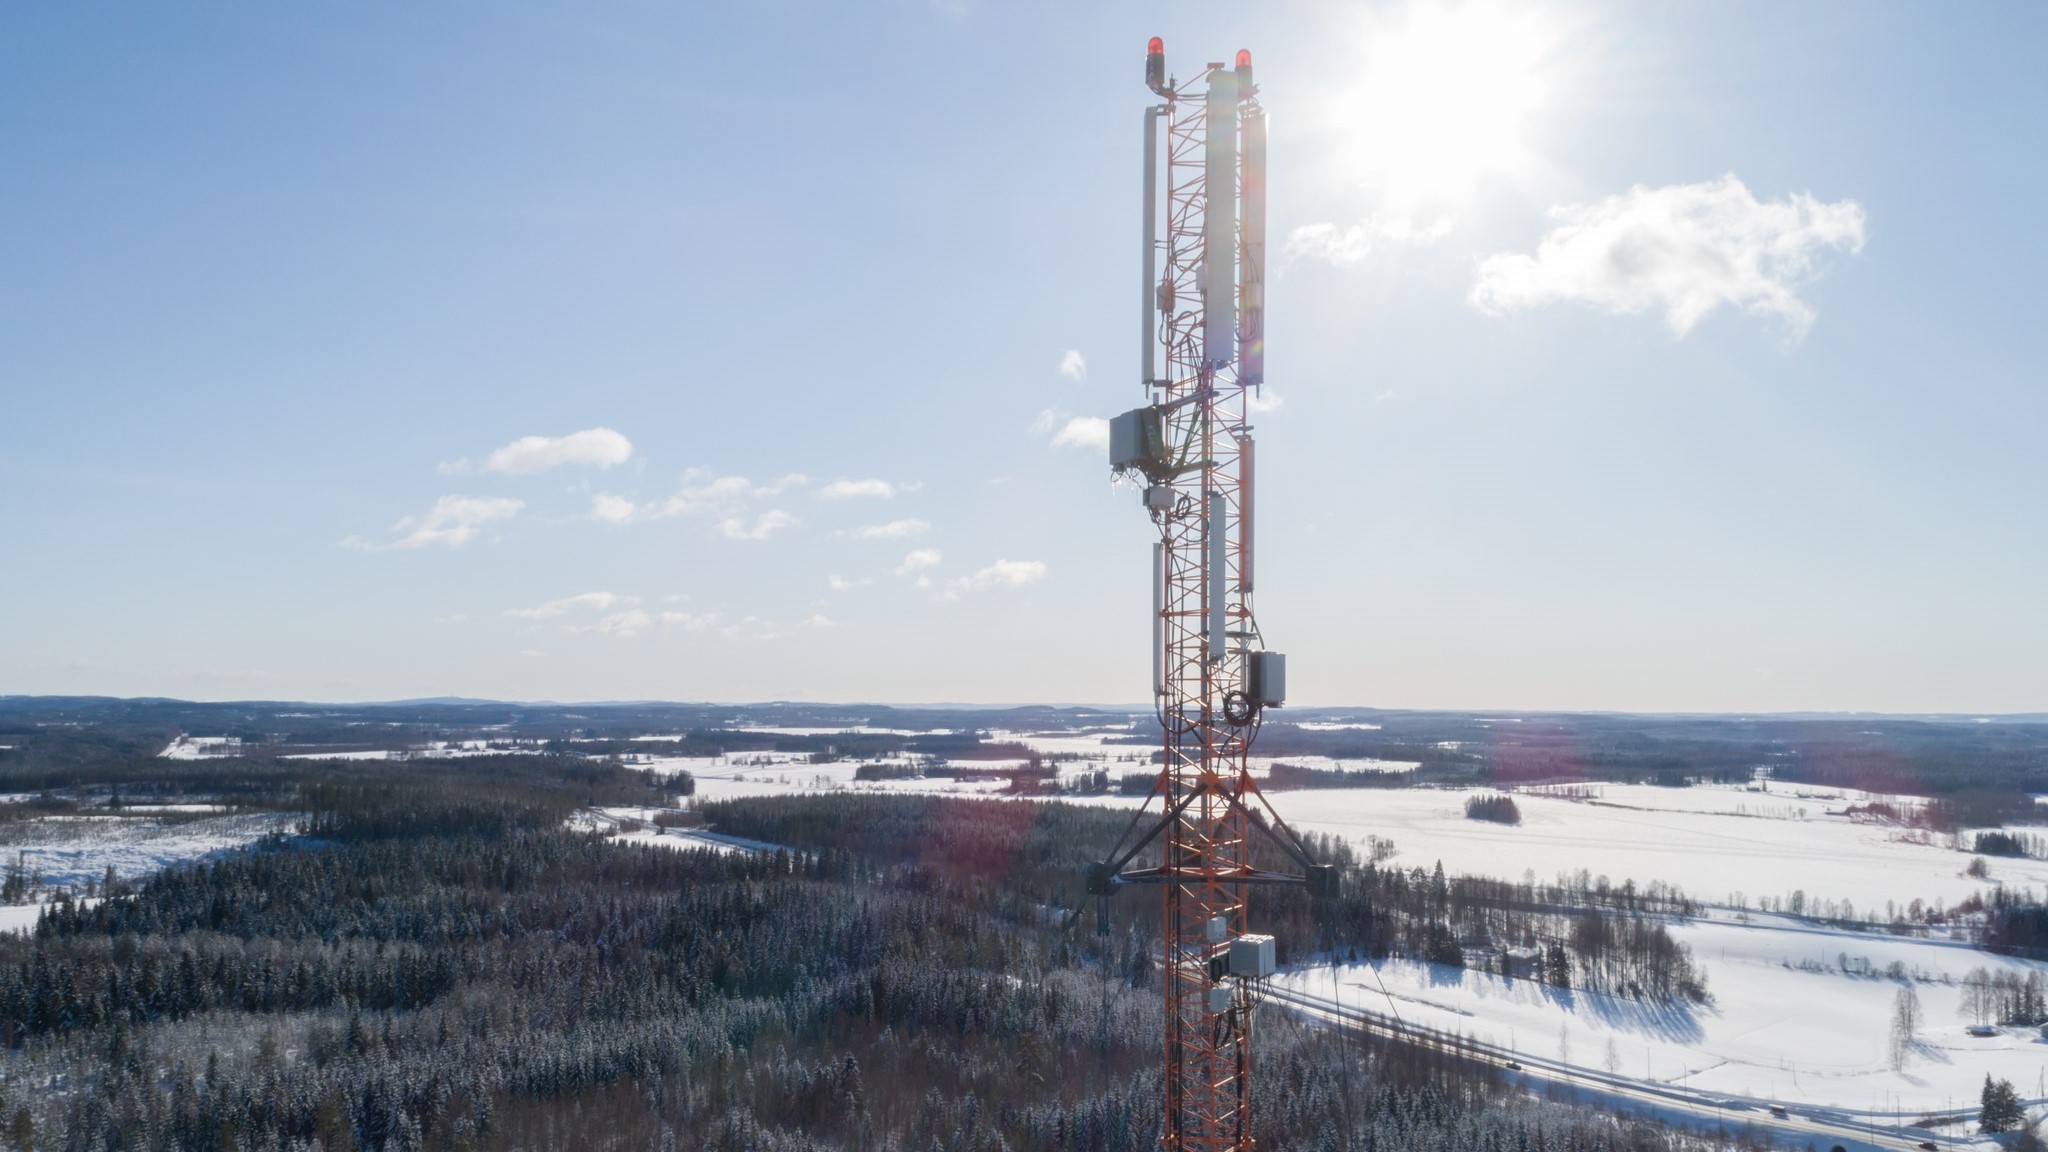 Radio mast in a winter landscape. (Image: Juha Tuomi)